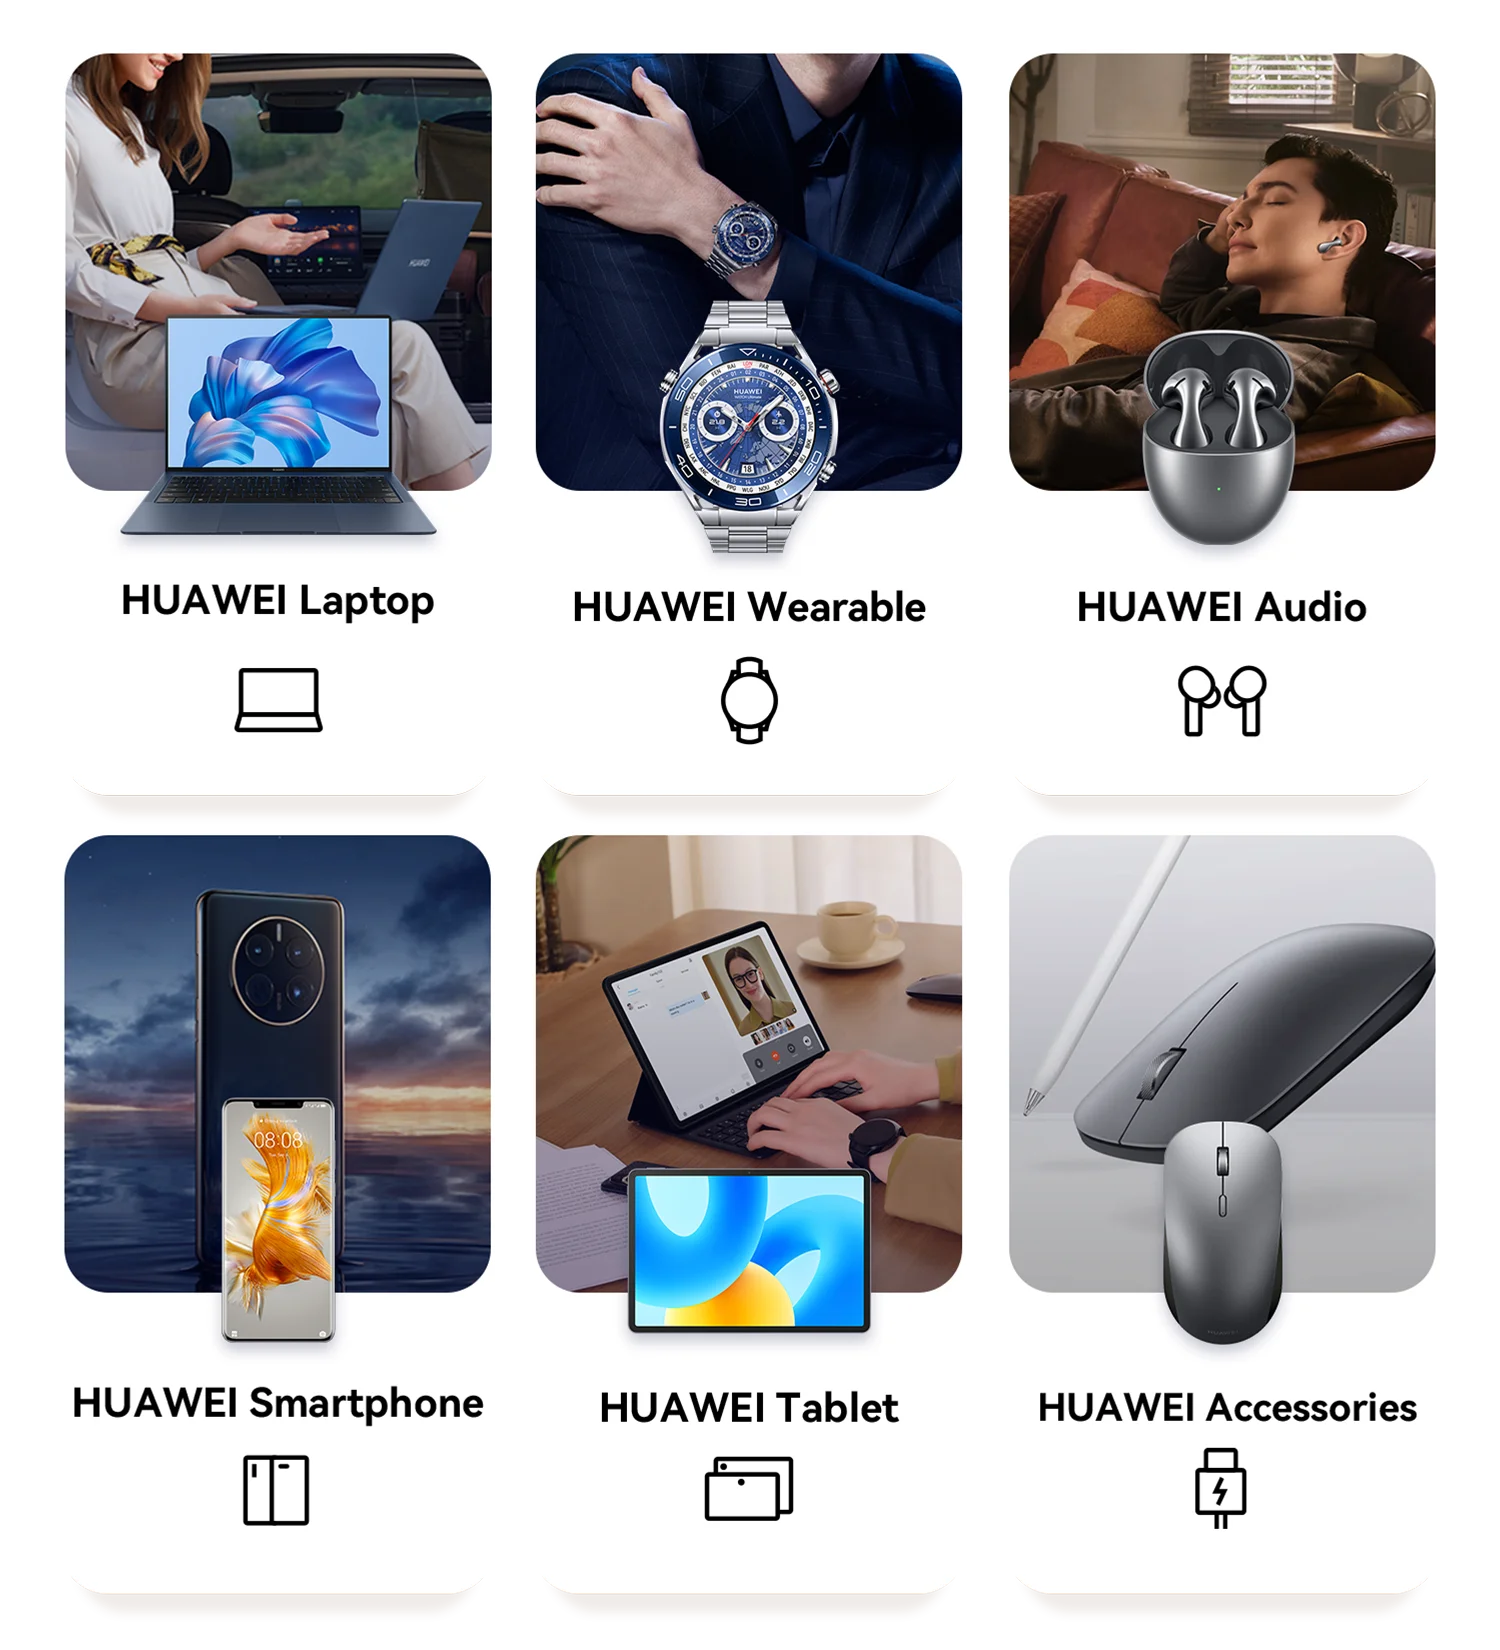 Rebajas de hasta el 40% en los móviles Huawei para animar las